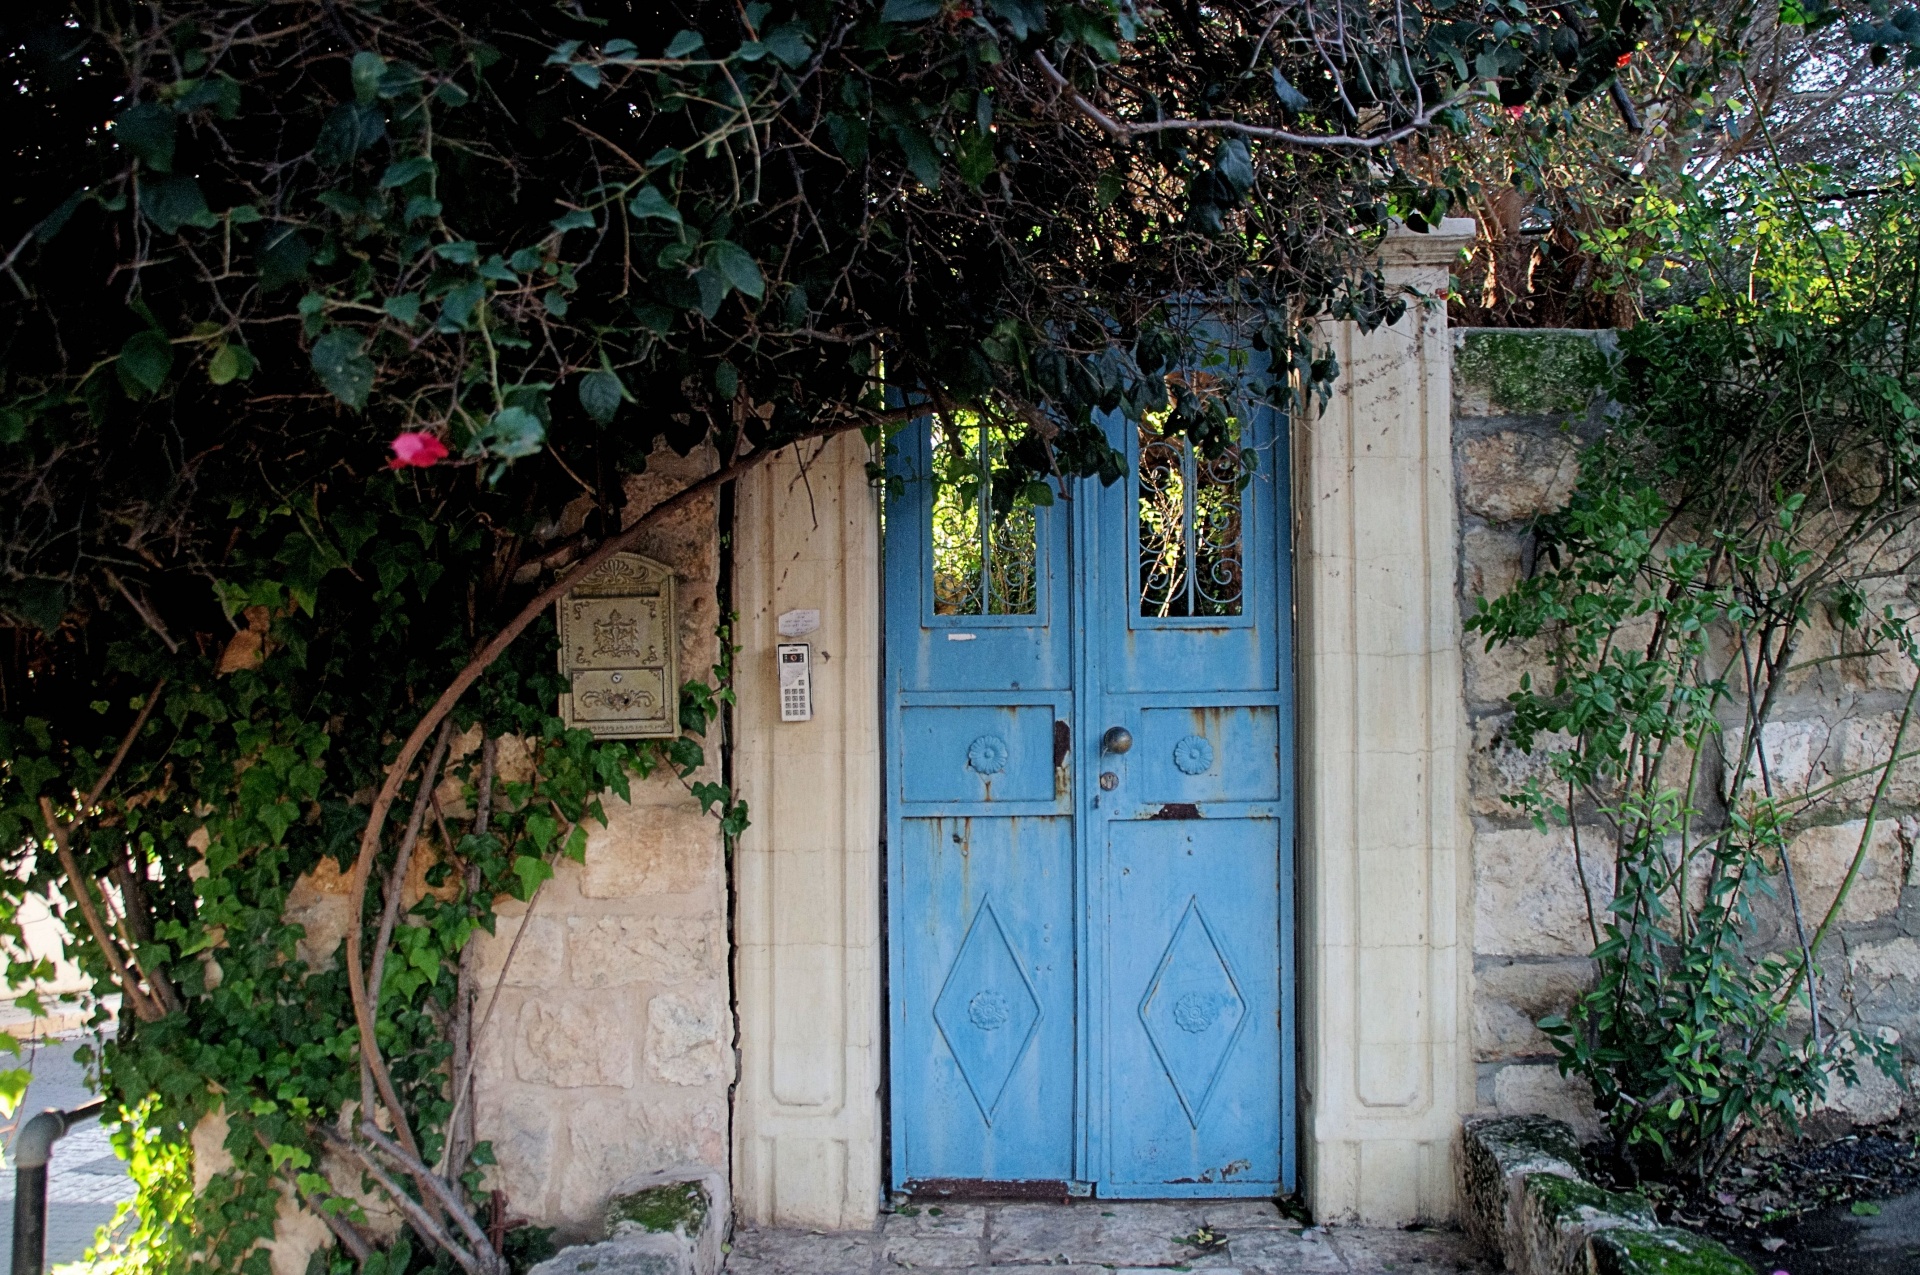 Blue door that leads to secret garden